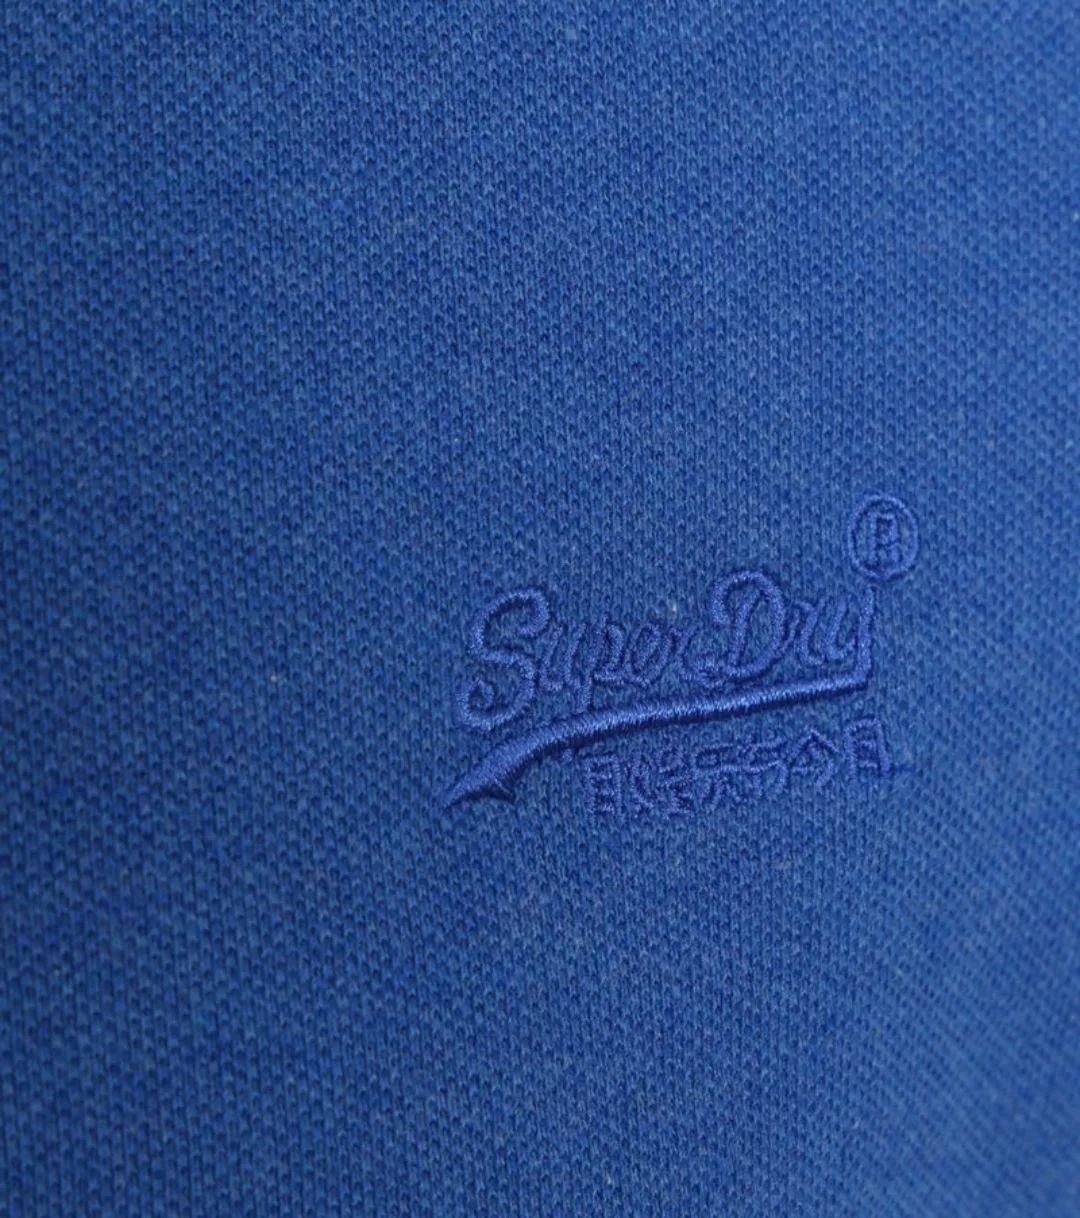 Superdry Classic Polo Shirt Mid Blau - Größe XXL günstig online kaufen